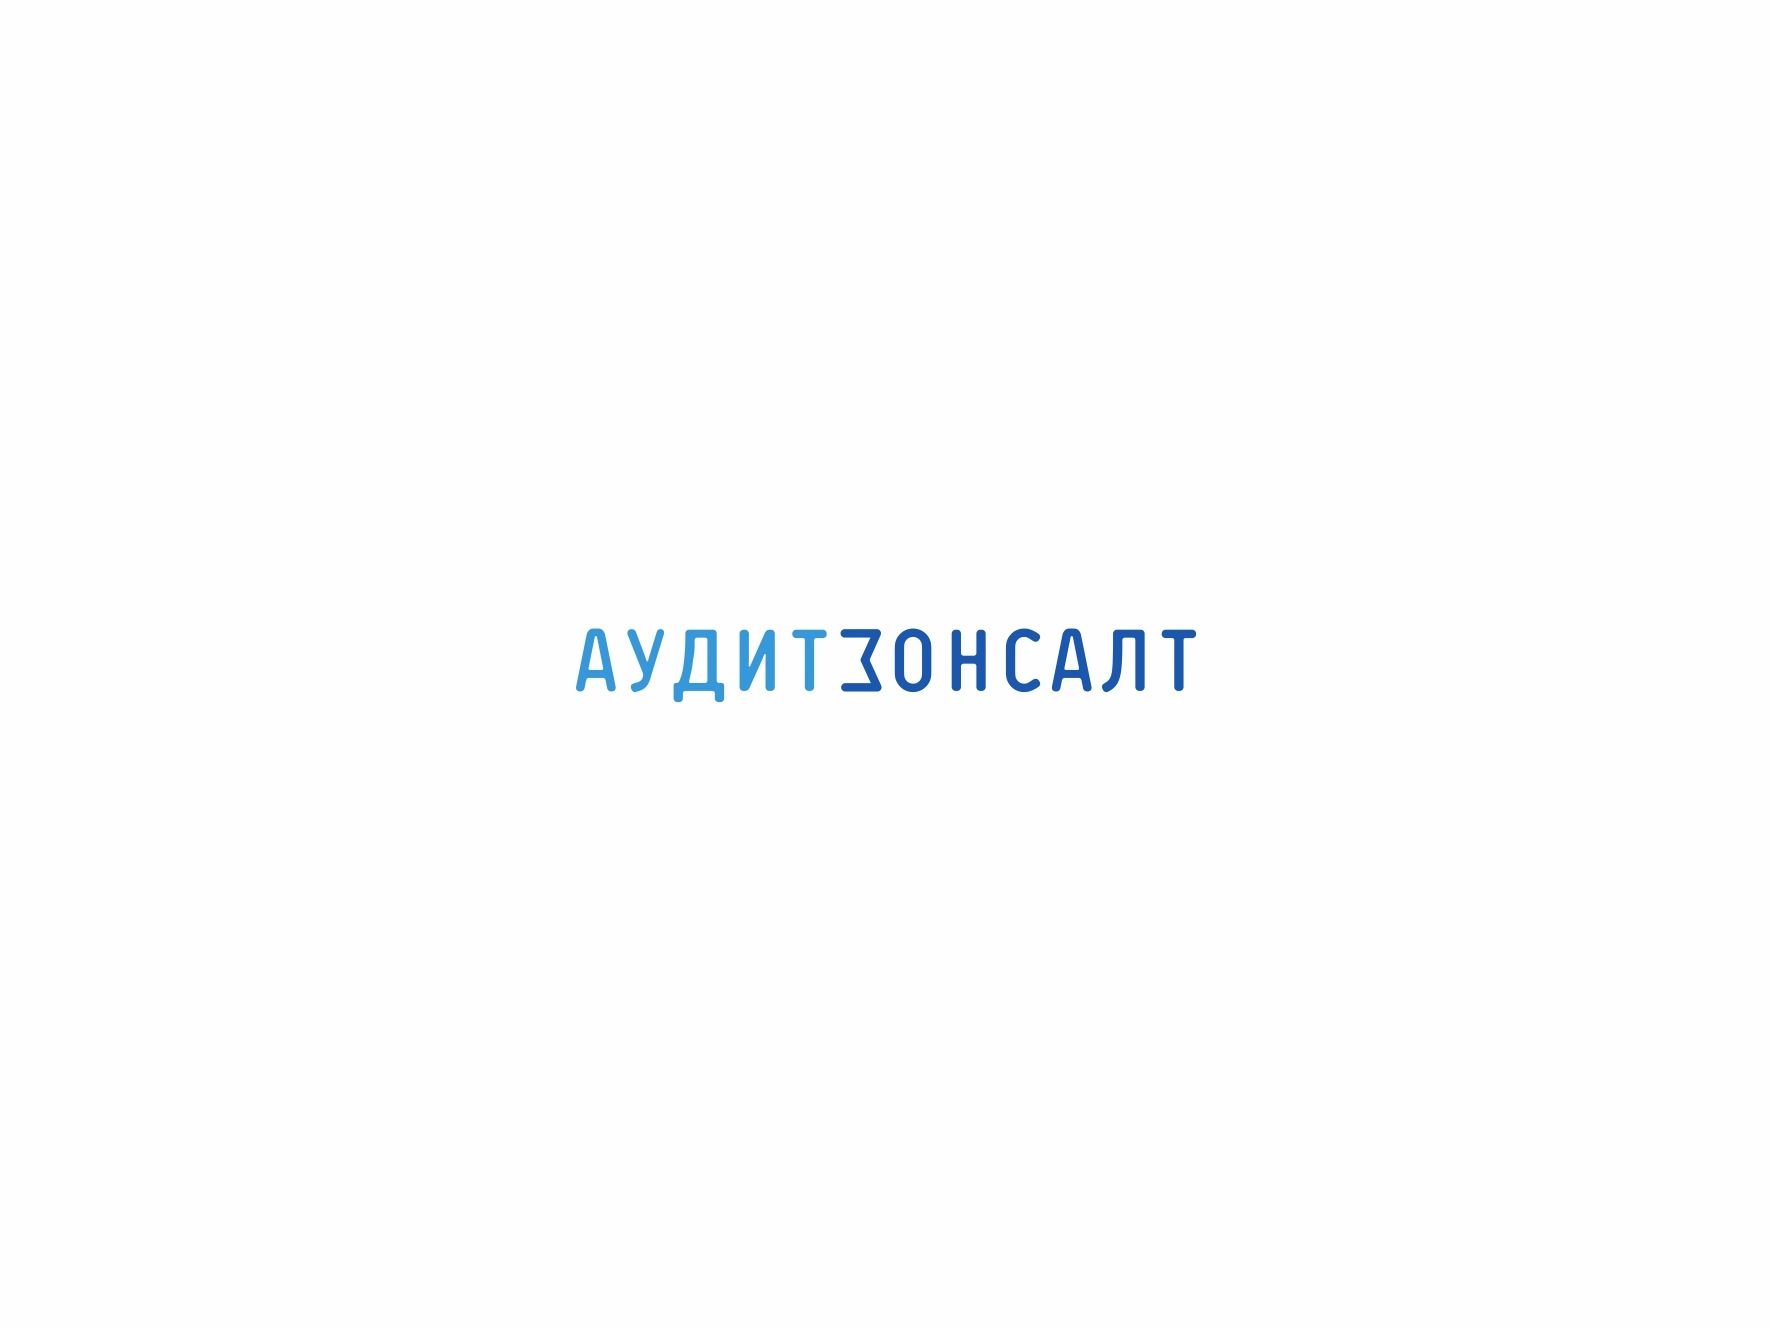 Логотип для бухгалтеров - дизайнер VictorBazine